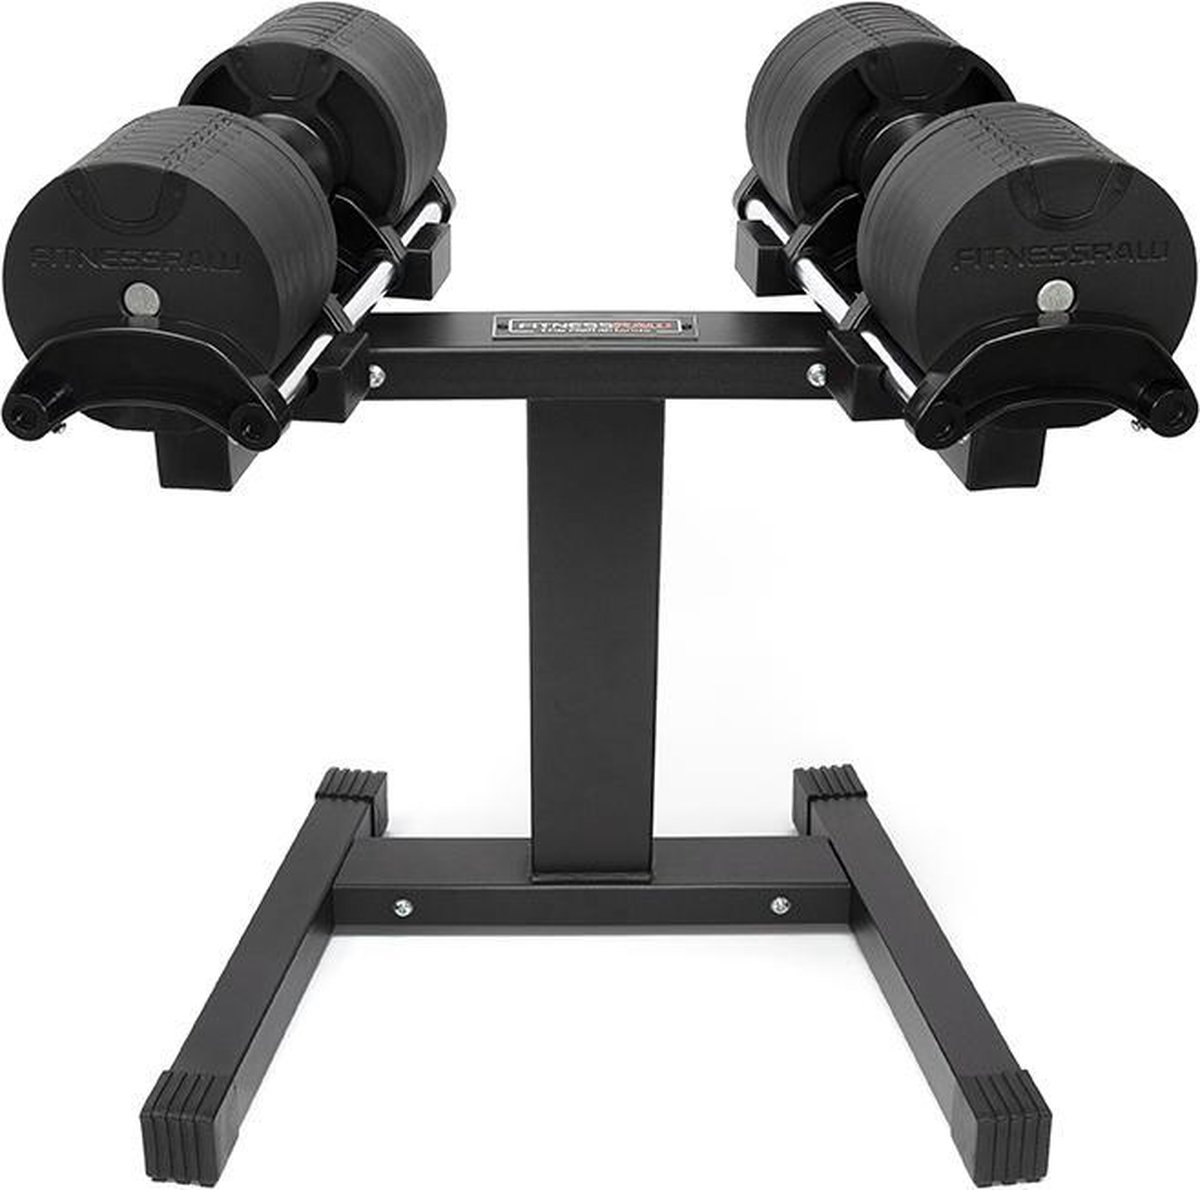 kleurstof Voorwoord slaaf fitnessRAW twist-pro verstelbare dumbells set 32kg+ standaard | bol.com